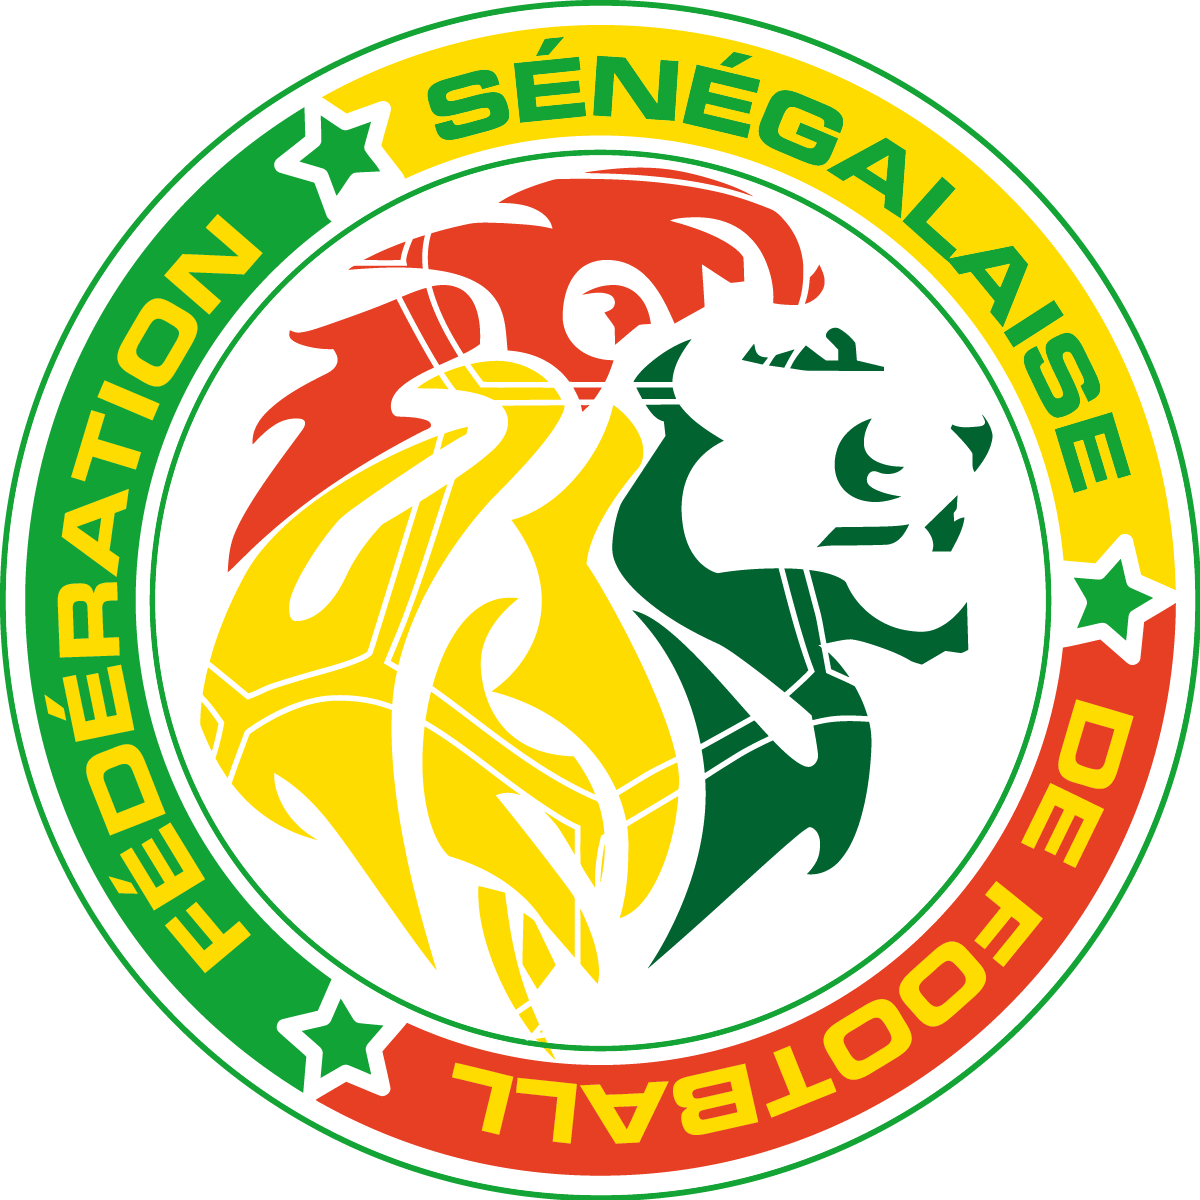 [Vector Logo] Đội Tuyển Bóng Đá Quốc Gia Senegal - Sénégal National Football Team